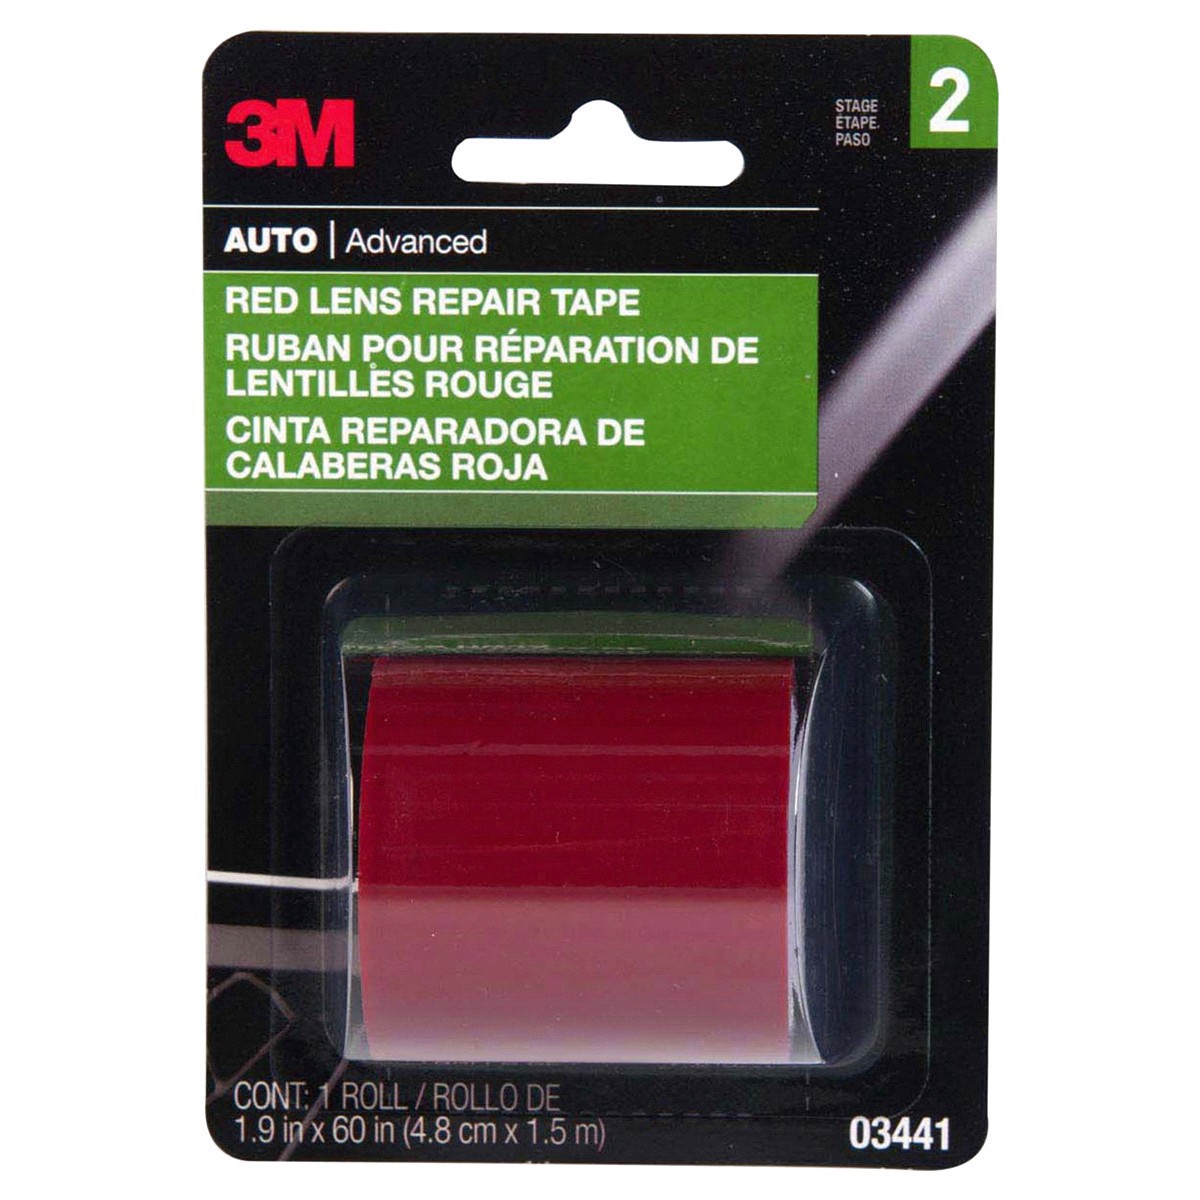 slide 1 of 9, 3M Red Lens Repair Tape, 1 ct